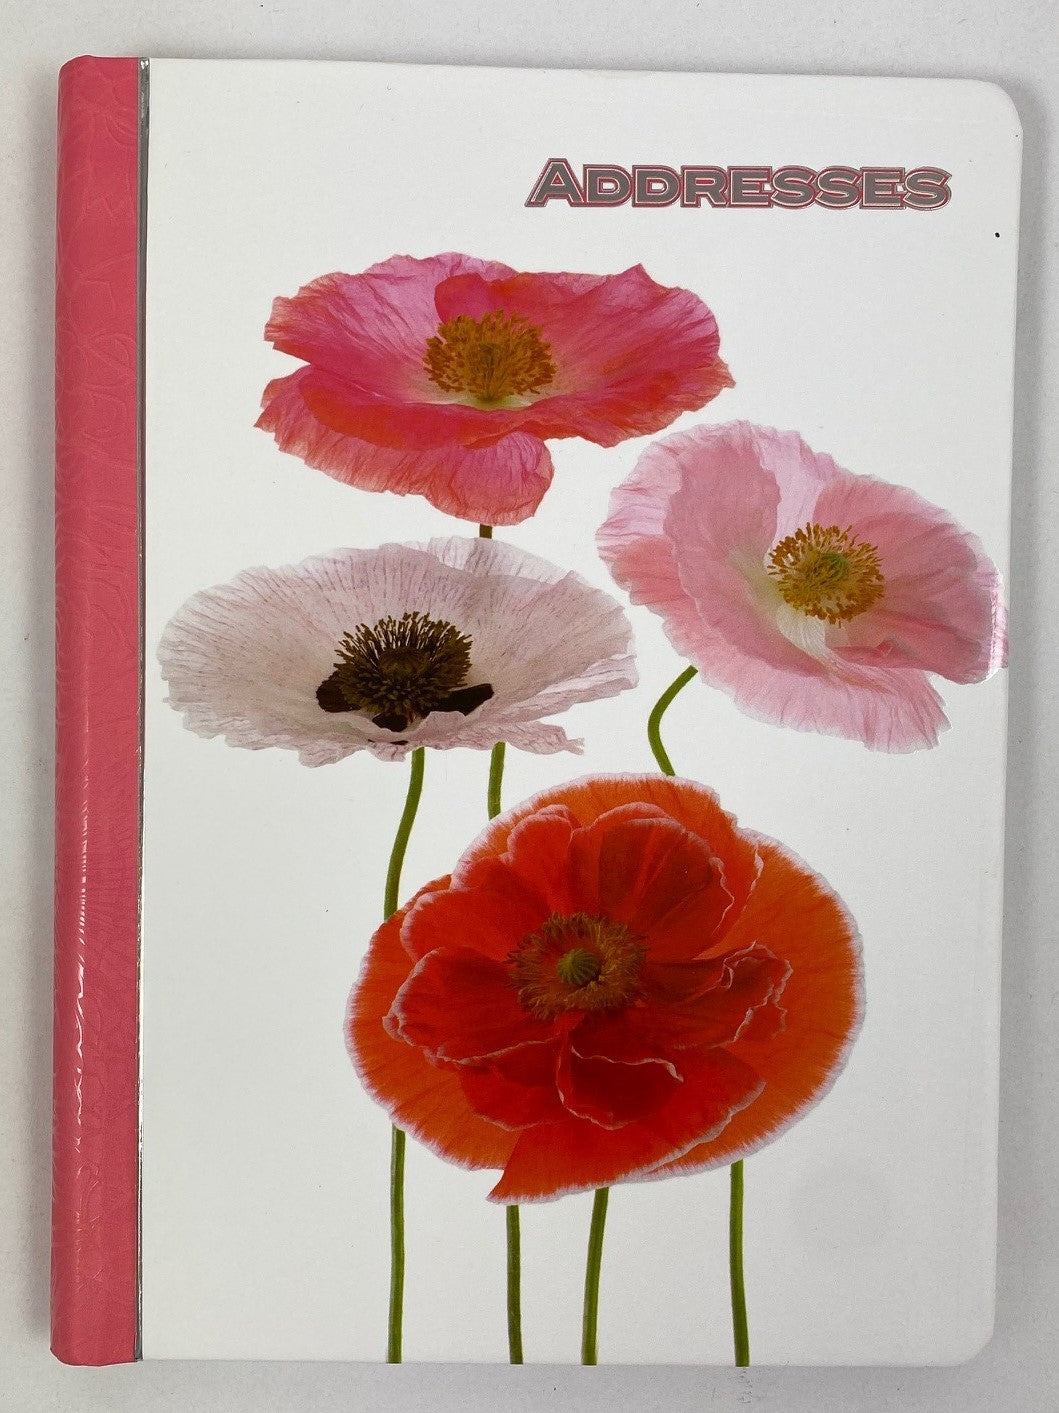 A5 Address Book Spiral Bound - Poppies